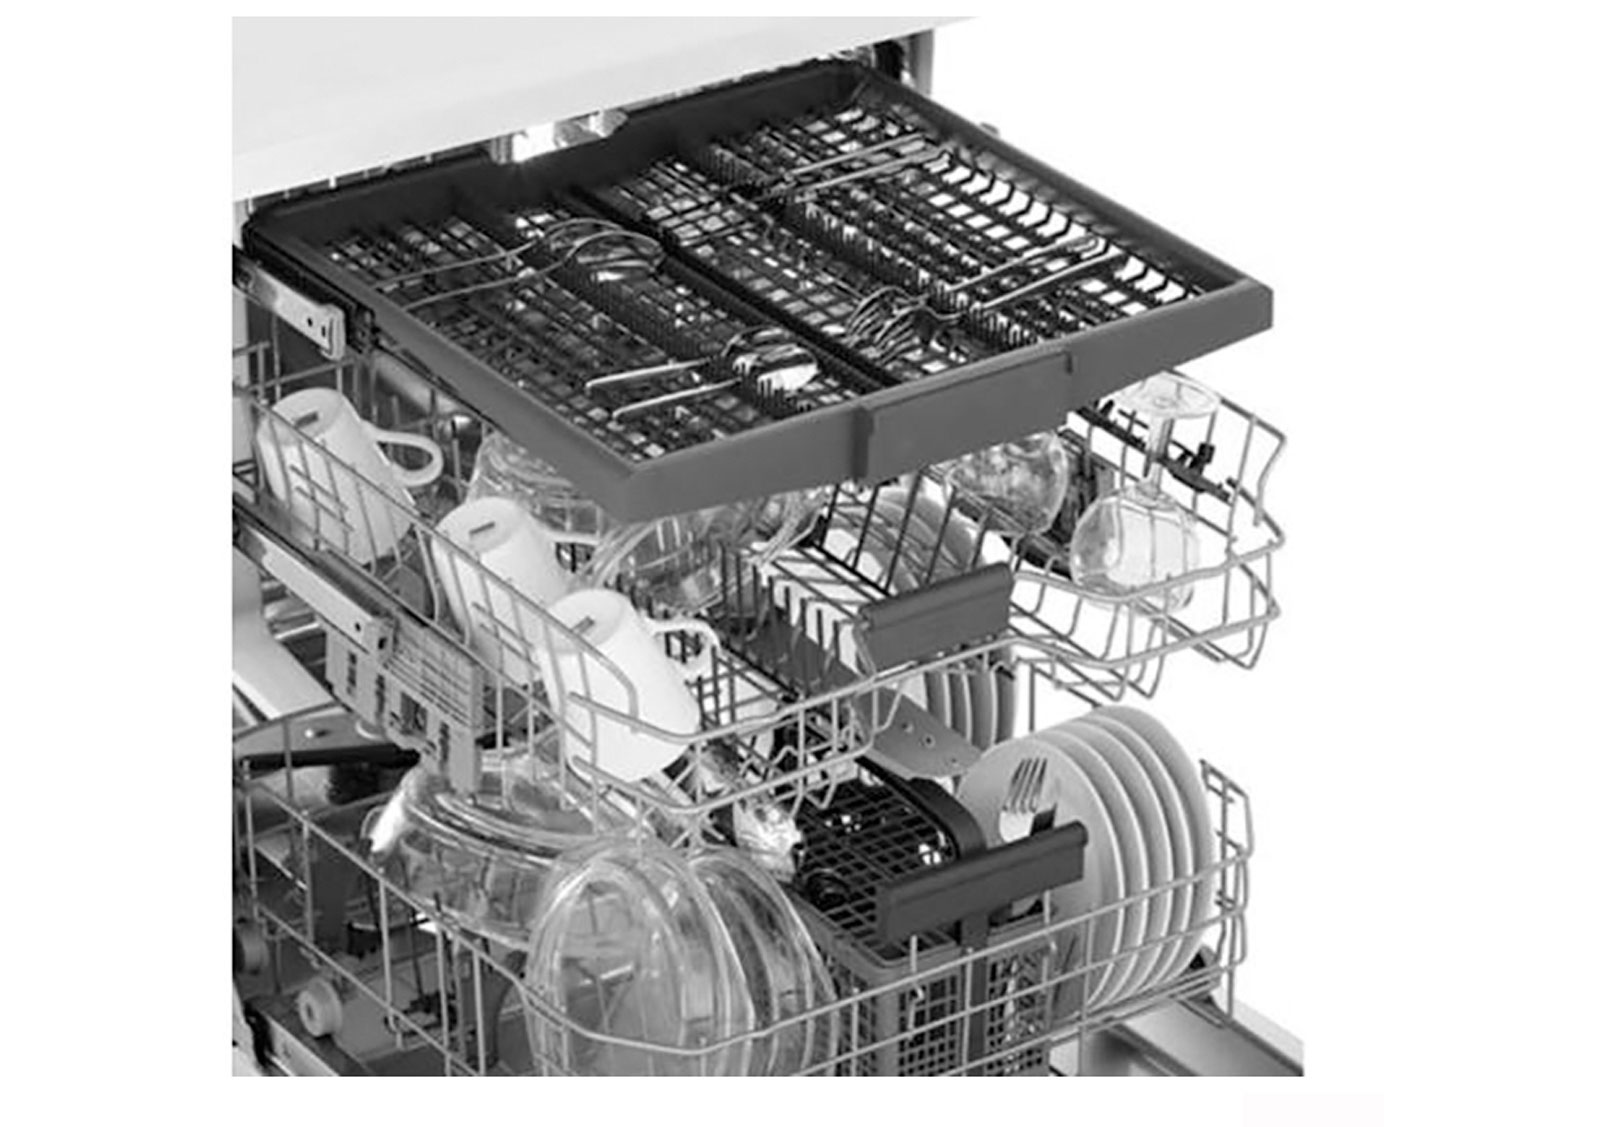  ماشین ظرفشویی بکو 15 نفره مدل DFN38530W